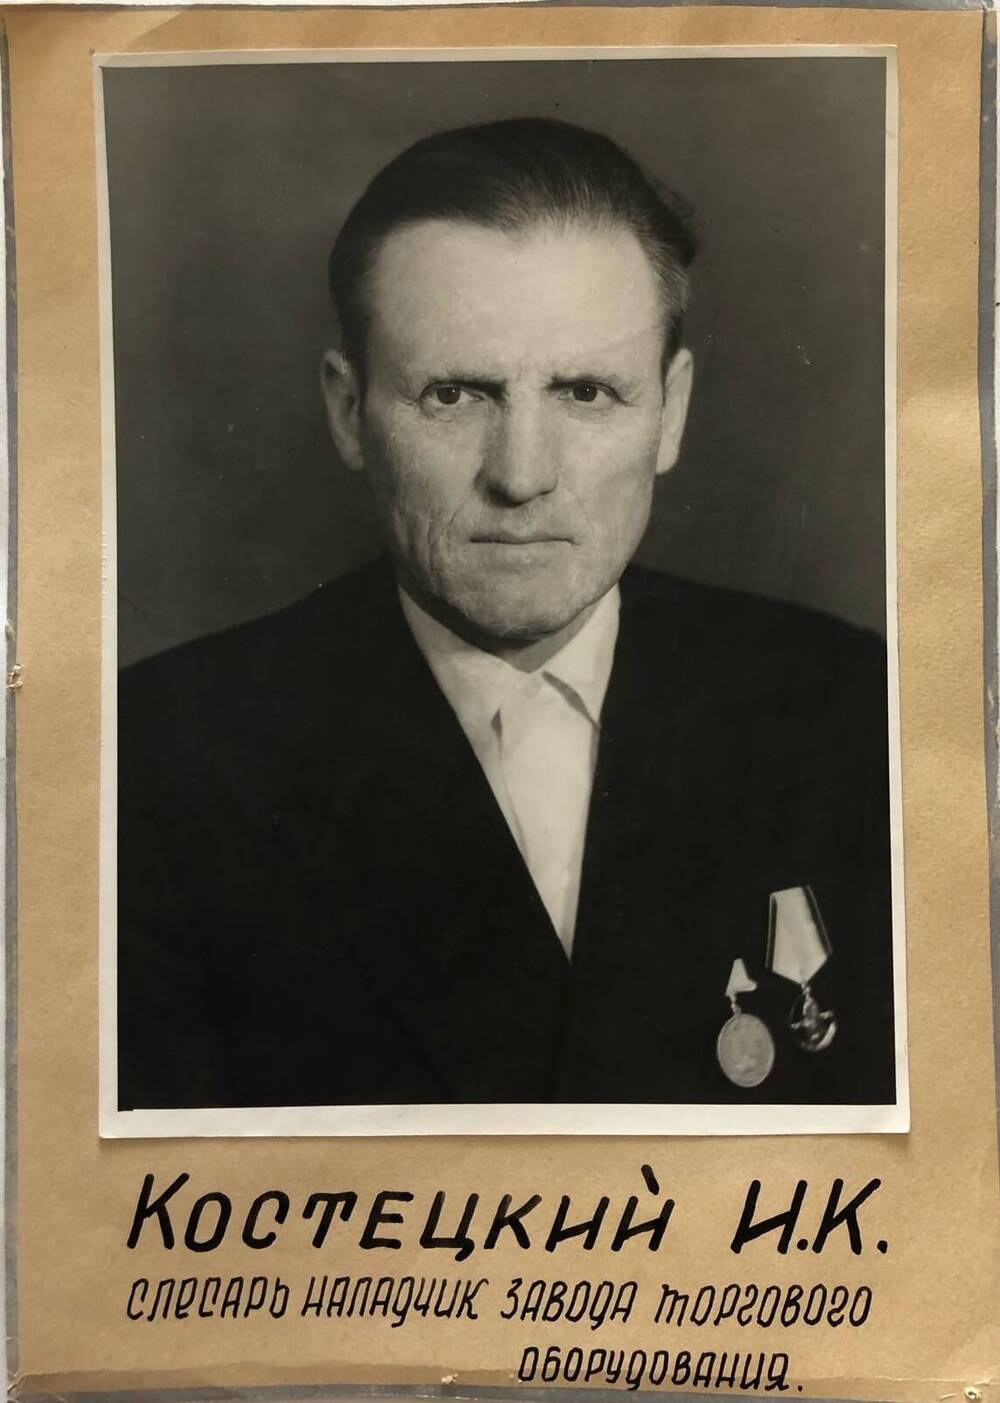 Фотография Костецкого И.К., камышанина, участника Великой Отечественной войны 1941-1945 гг., защитника Сталинграда